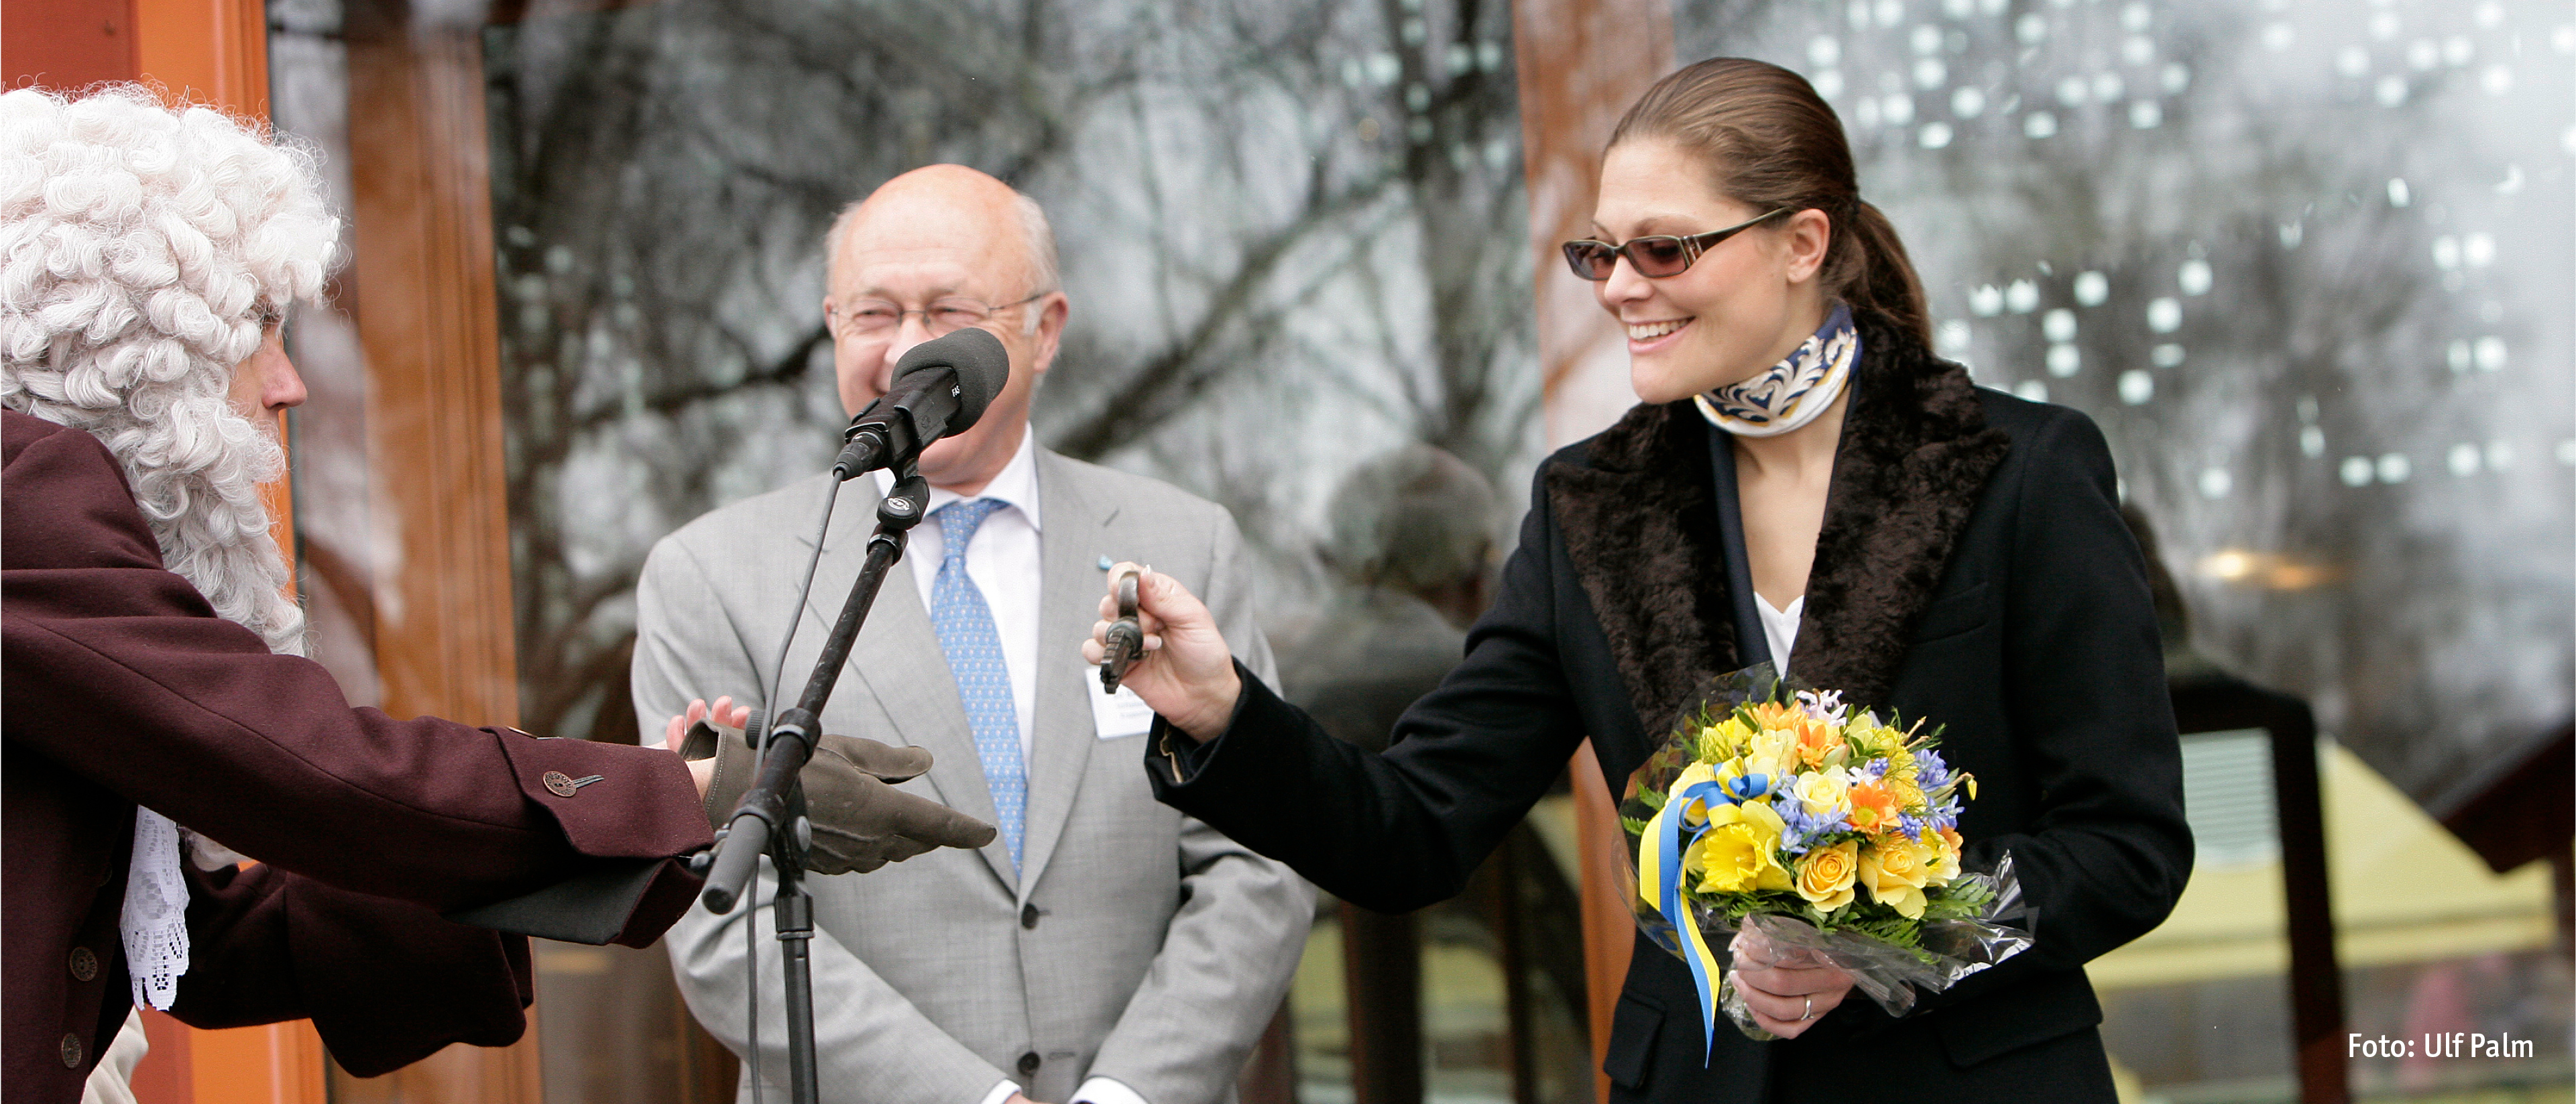 Kronprinsessan Viktoria tar emot nyckeln till världsarvshuset från Christopher Polhem (skådespelaren Joakim Lindblad). I bakgrunden står Bo Berggren, tidigare verkställande direktör för Stora AB och senare företagets styrelseordförande.